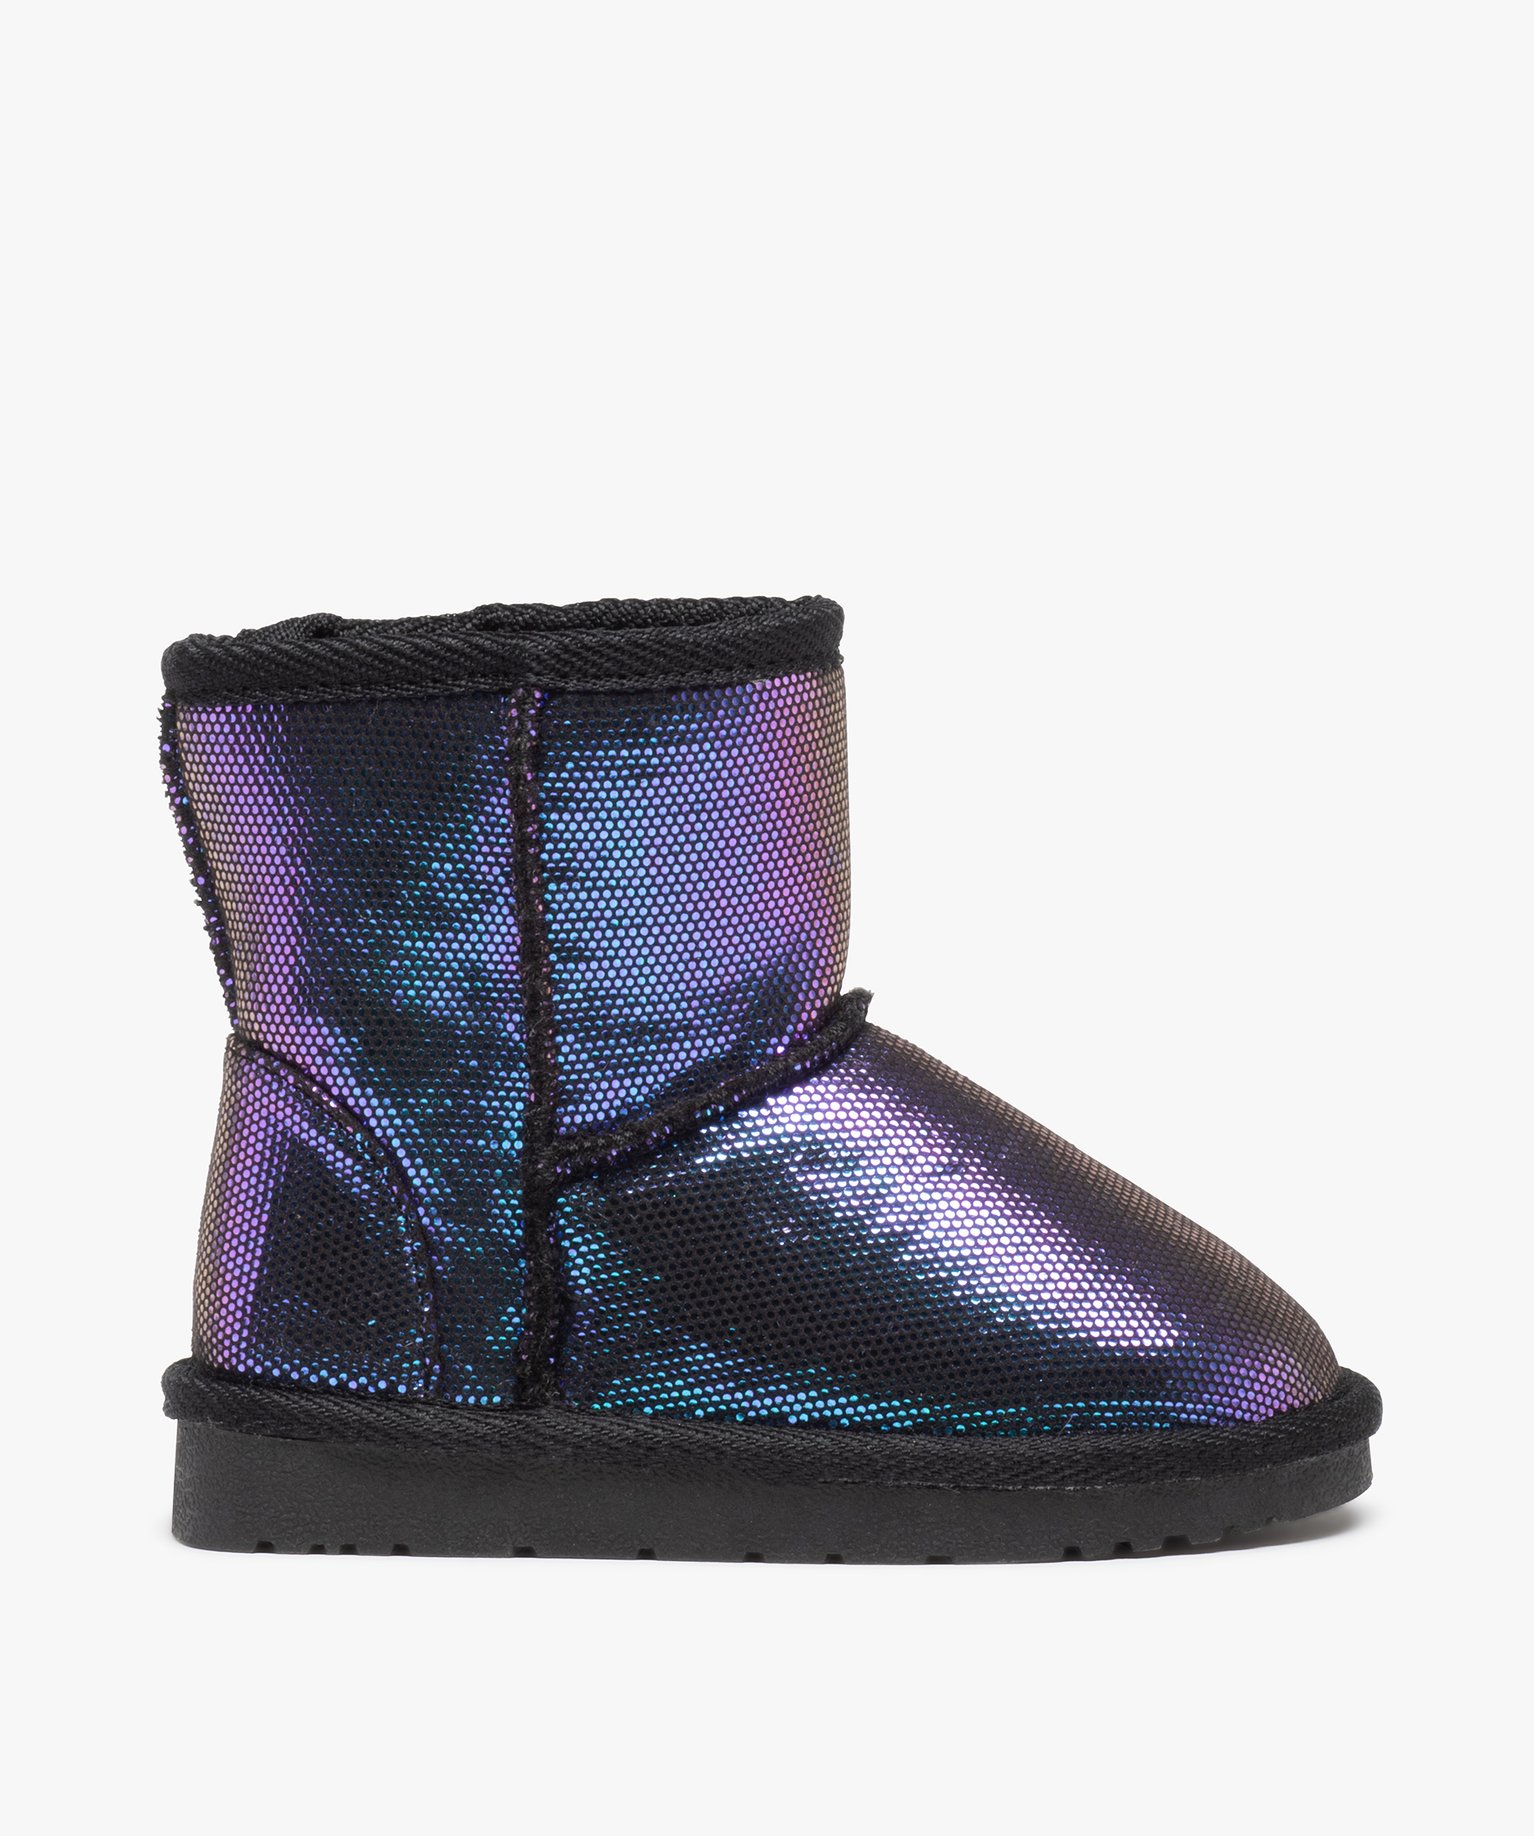 boots fourrees fille en suedine a pois brillants et irises violet